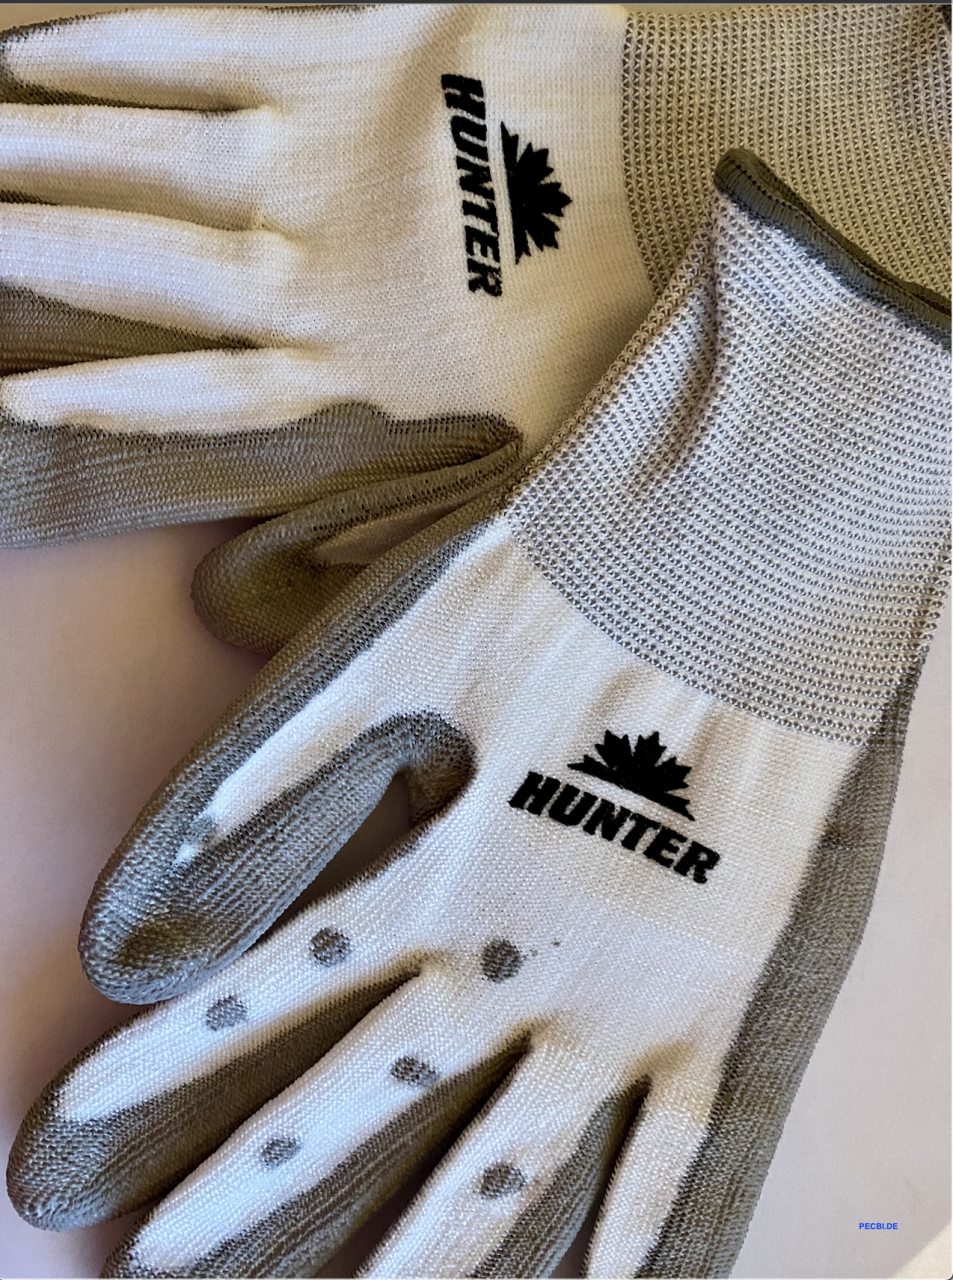 HUNTER - schnittfester Handschuh, teilweise mit grauen Punkten